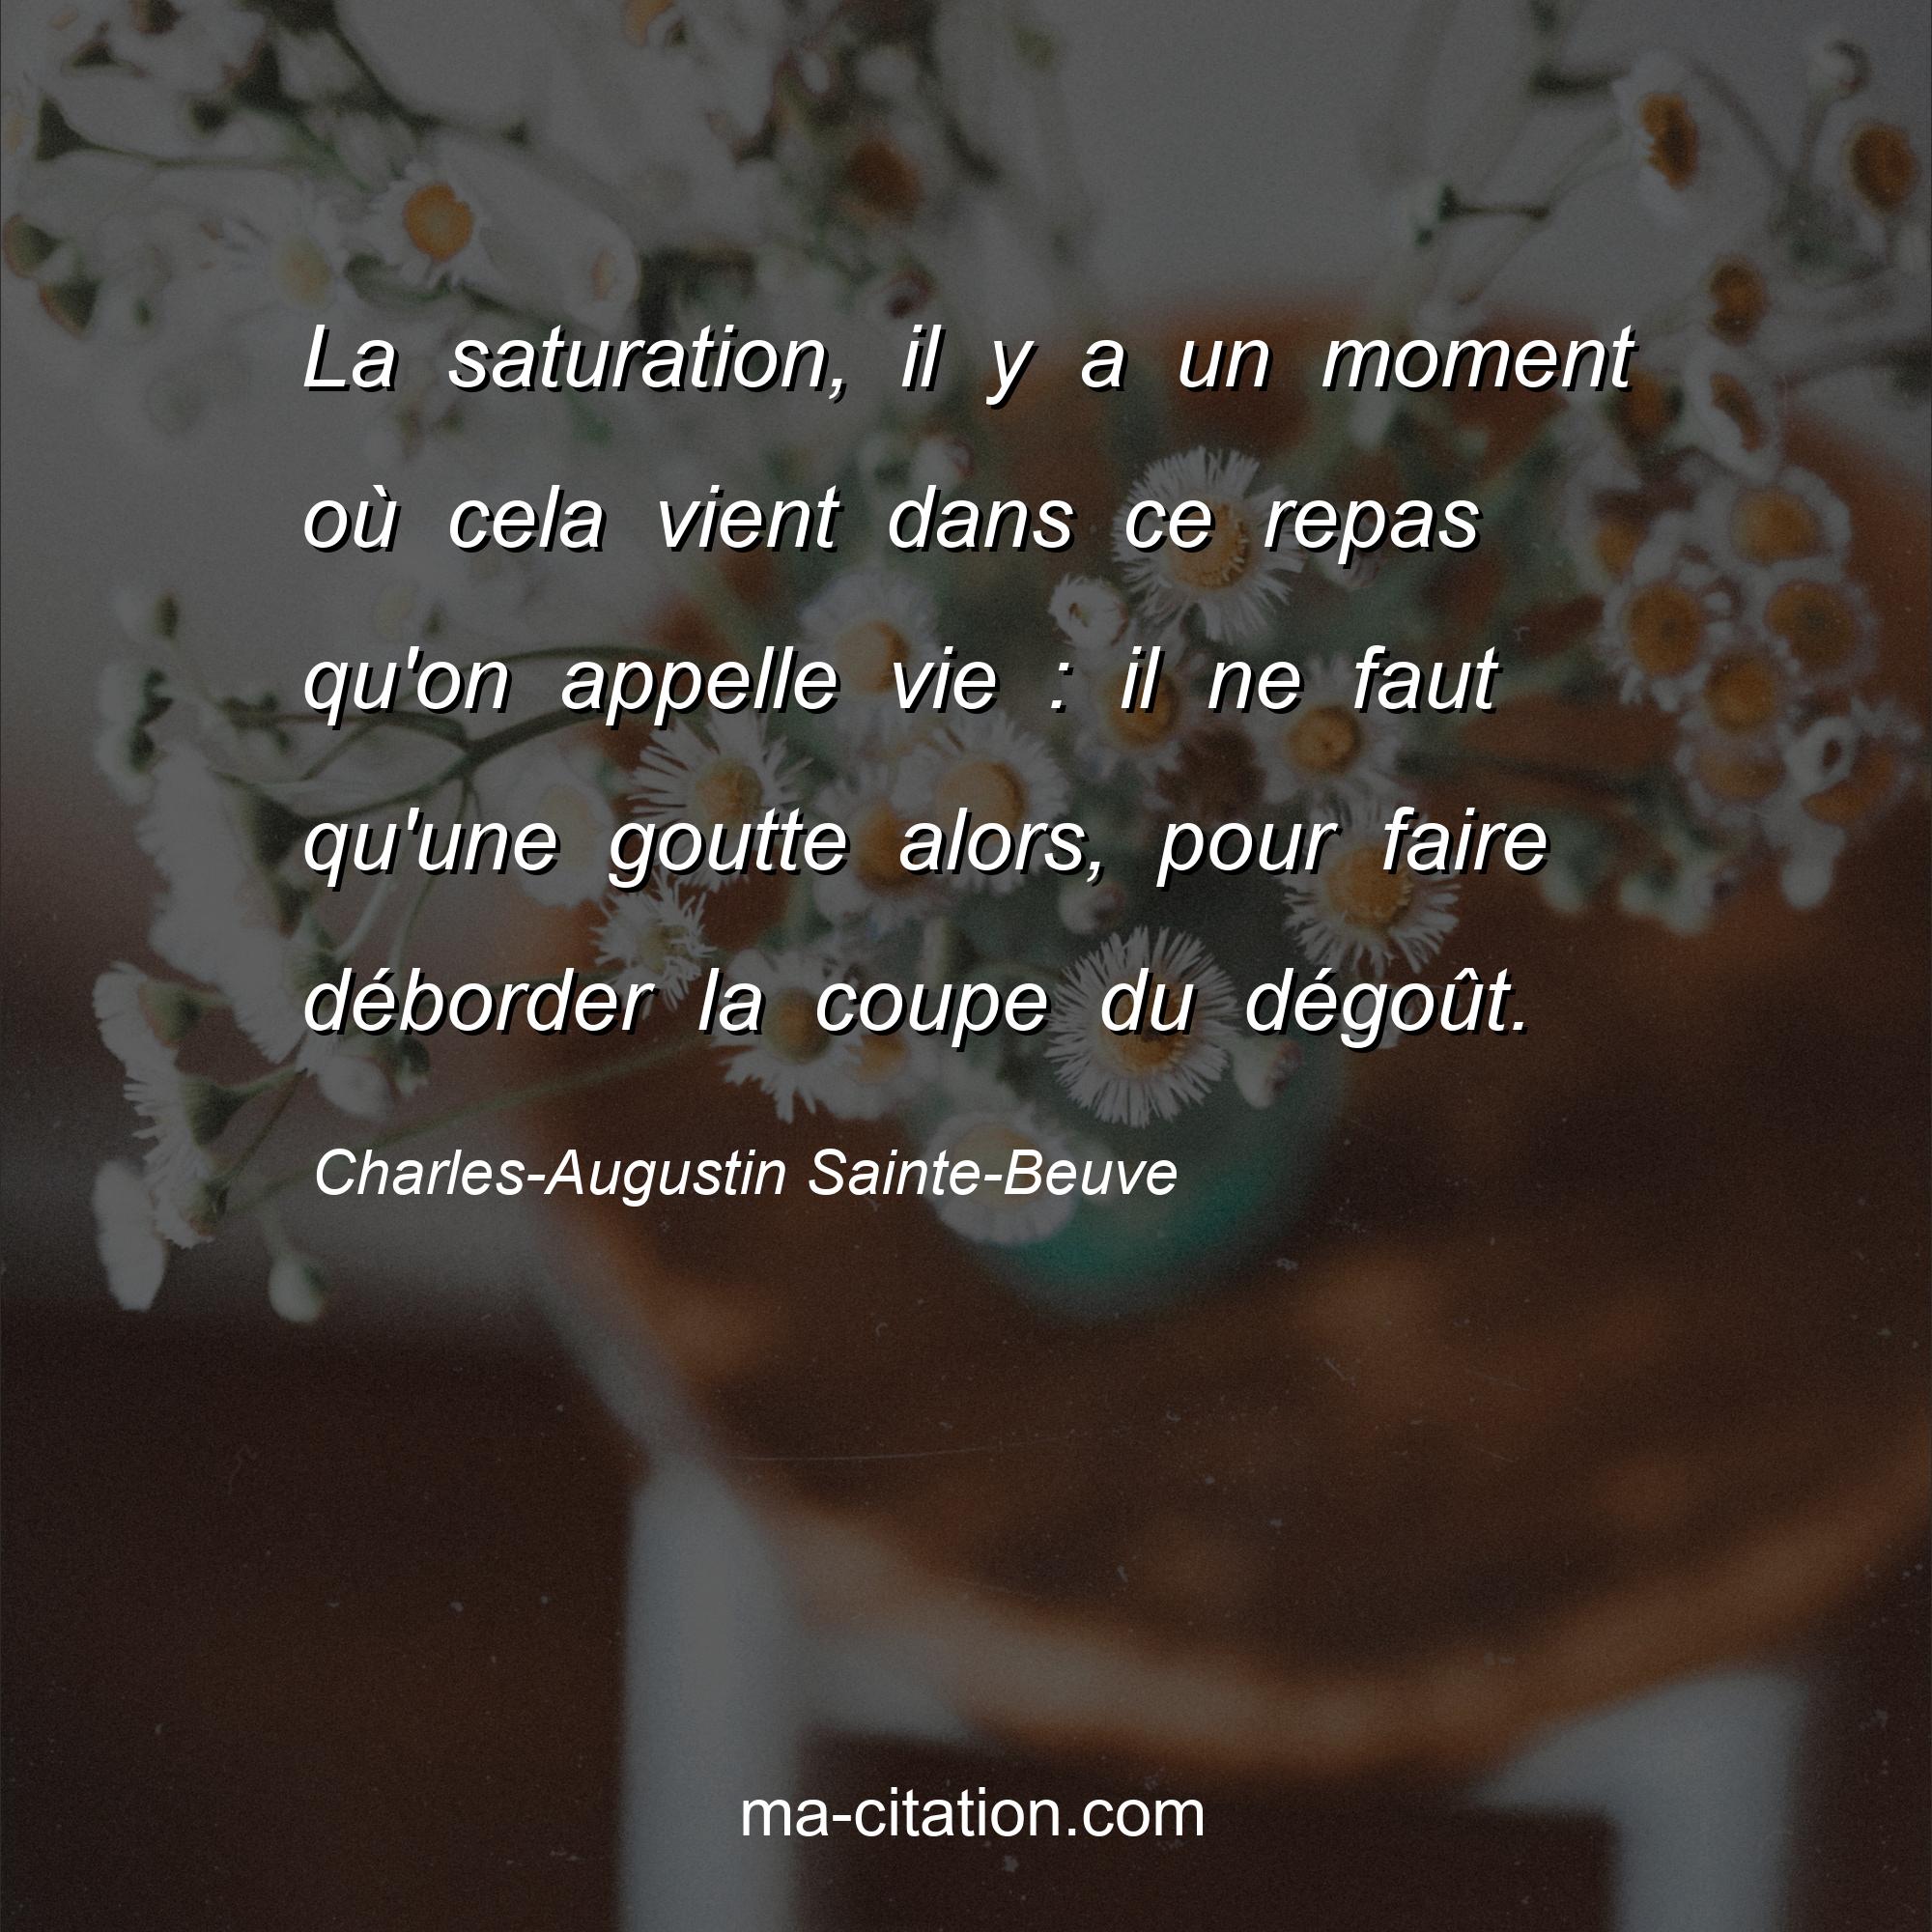 Charles-Augustin Sainte-Beuve : La saturation, il y a un moment où cela vient dans ce repas qu'on appelle vie : il ne faut qu'une goutte alors, pour faire déborder la coupe du dégoût.